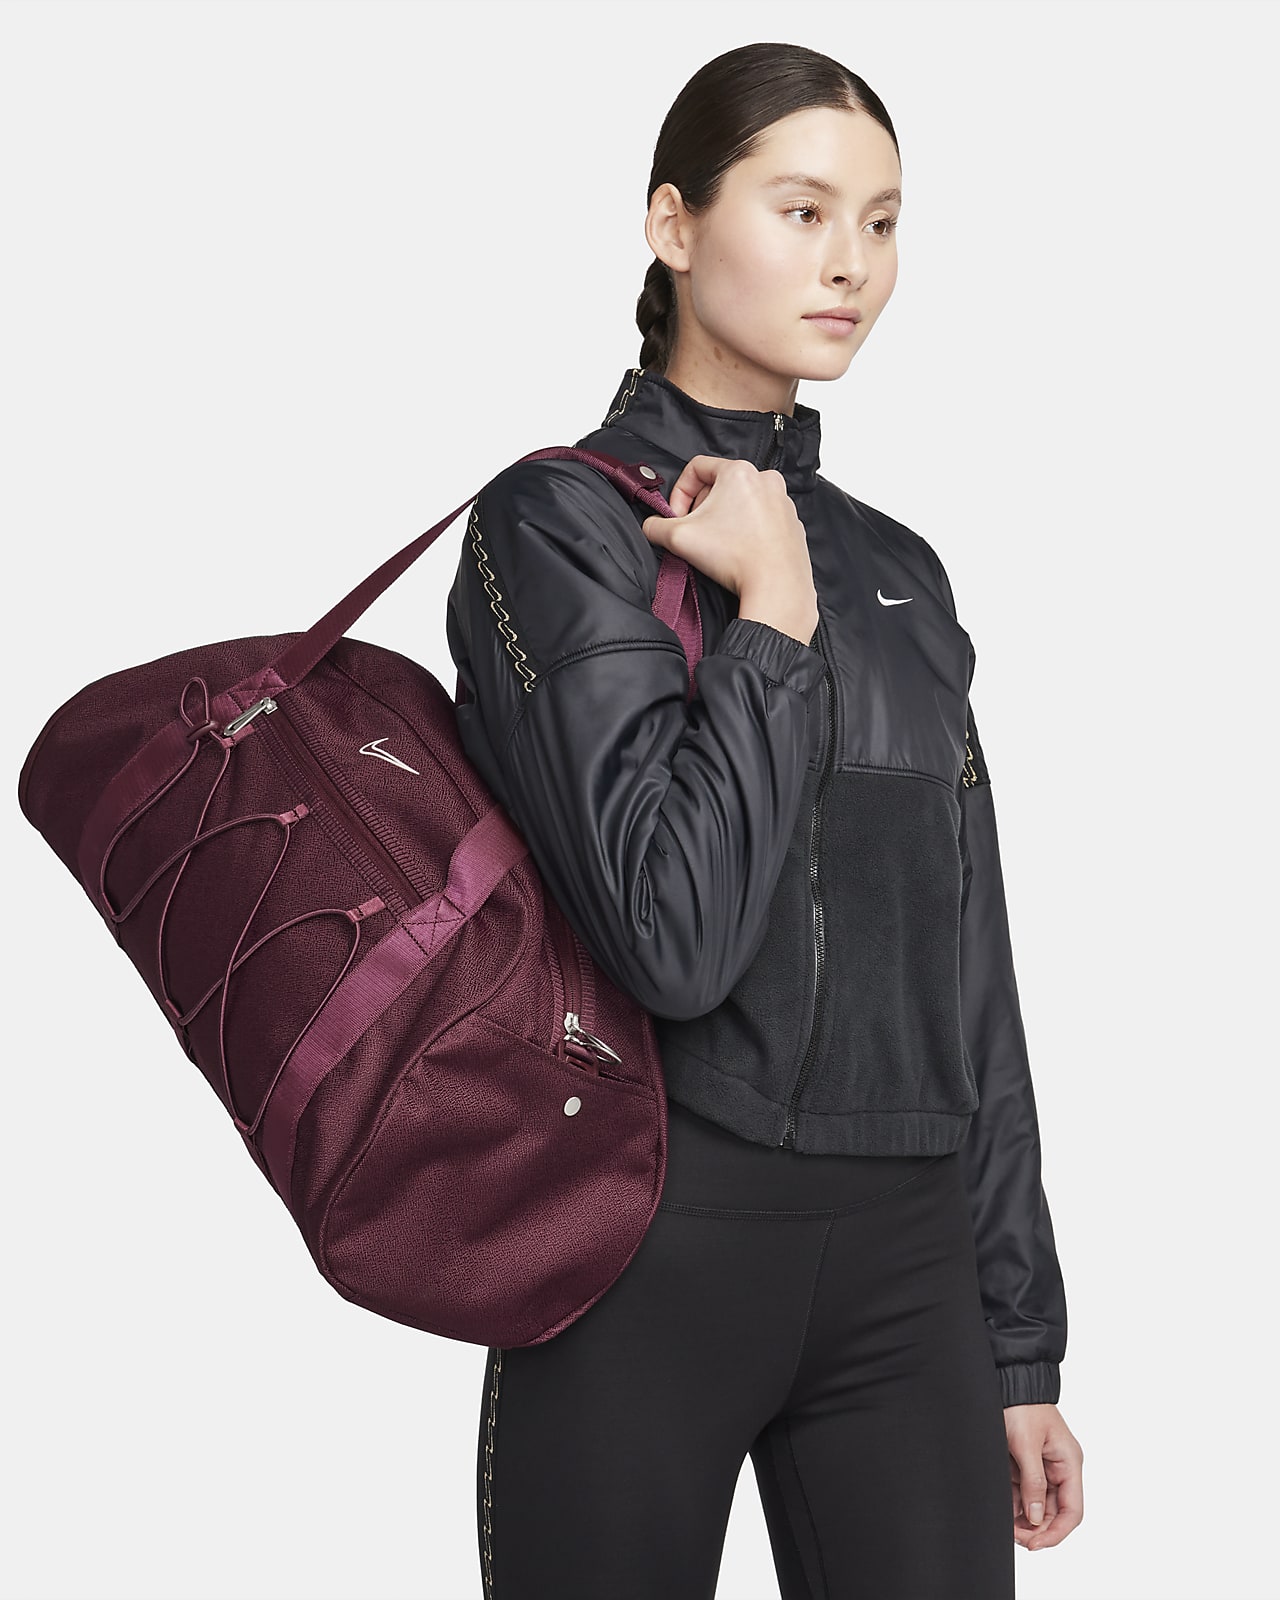 Backpack Nike One 